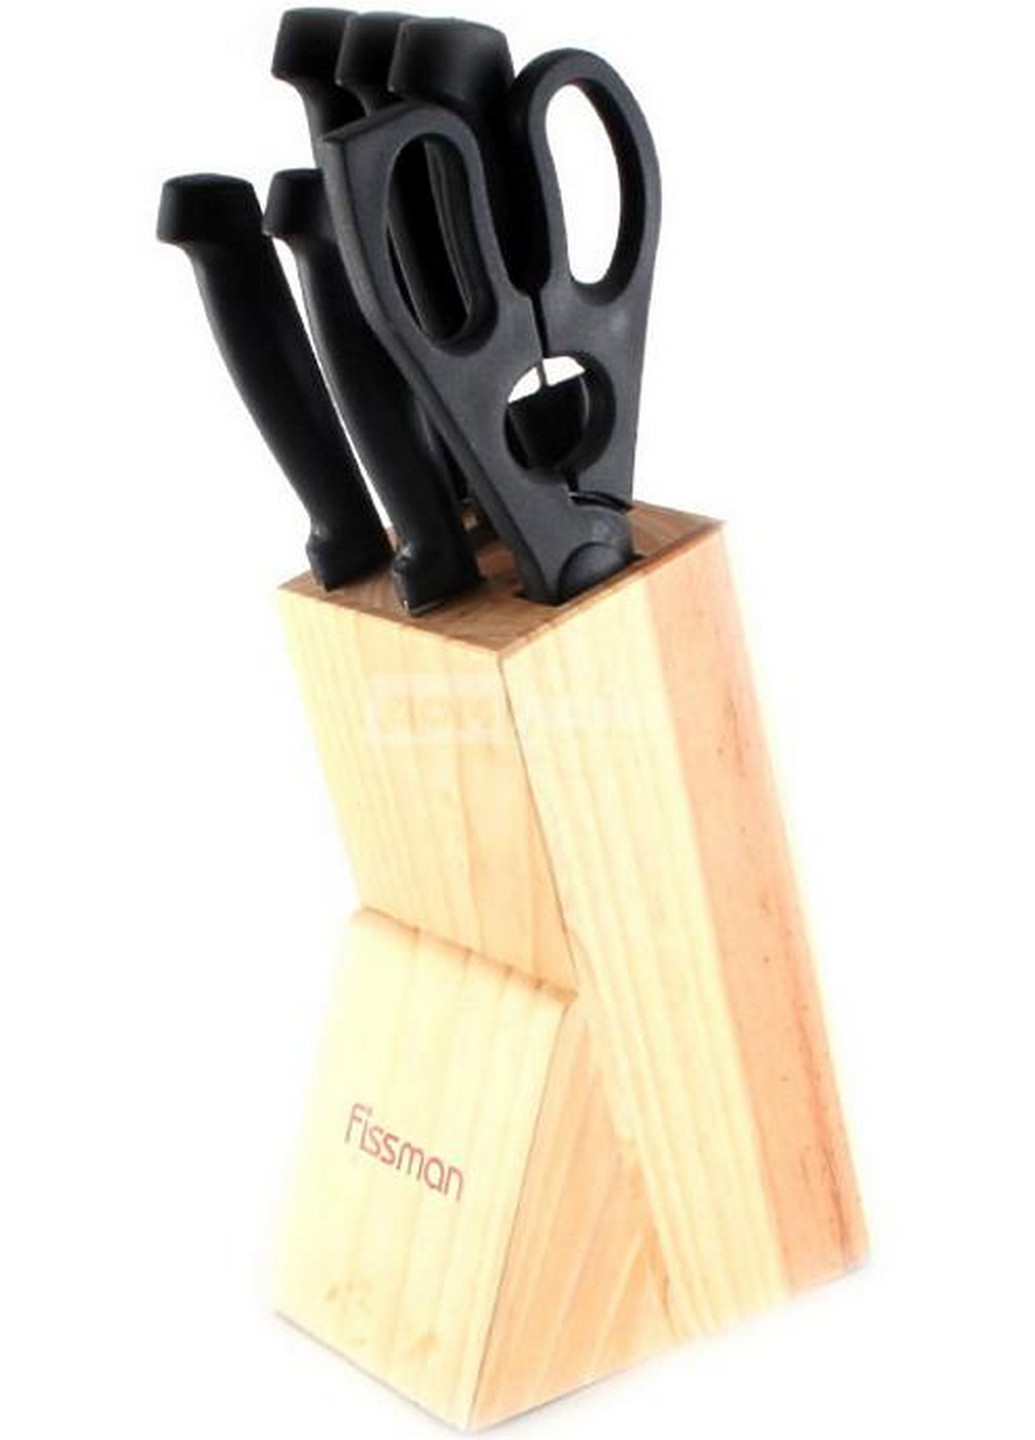 Набор кухонных ножей Centrum 7 предметов 20 см, 20 см, 20 см, 12 см, 9 см Fissman (267149451)